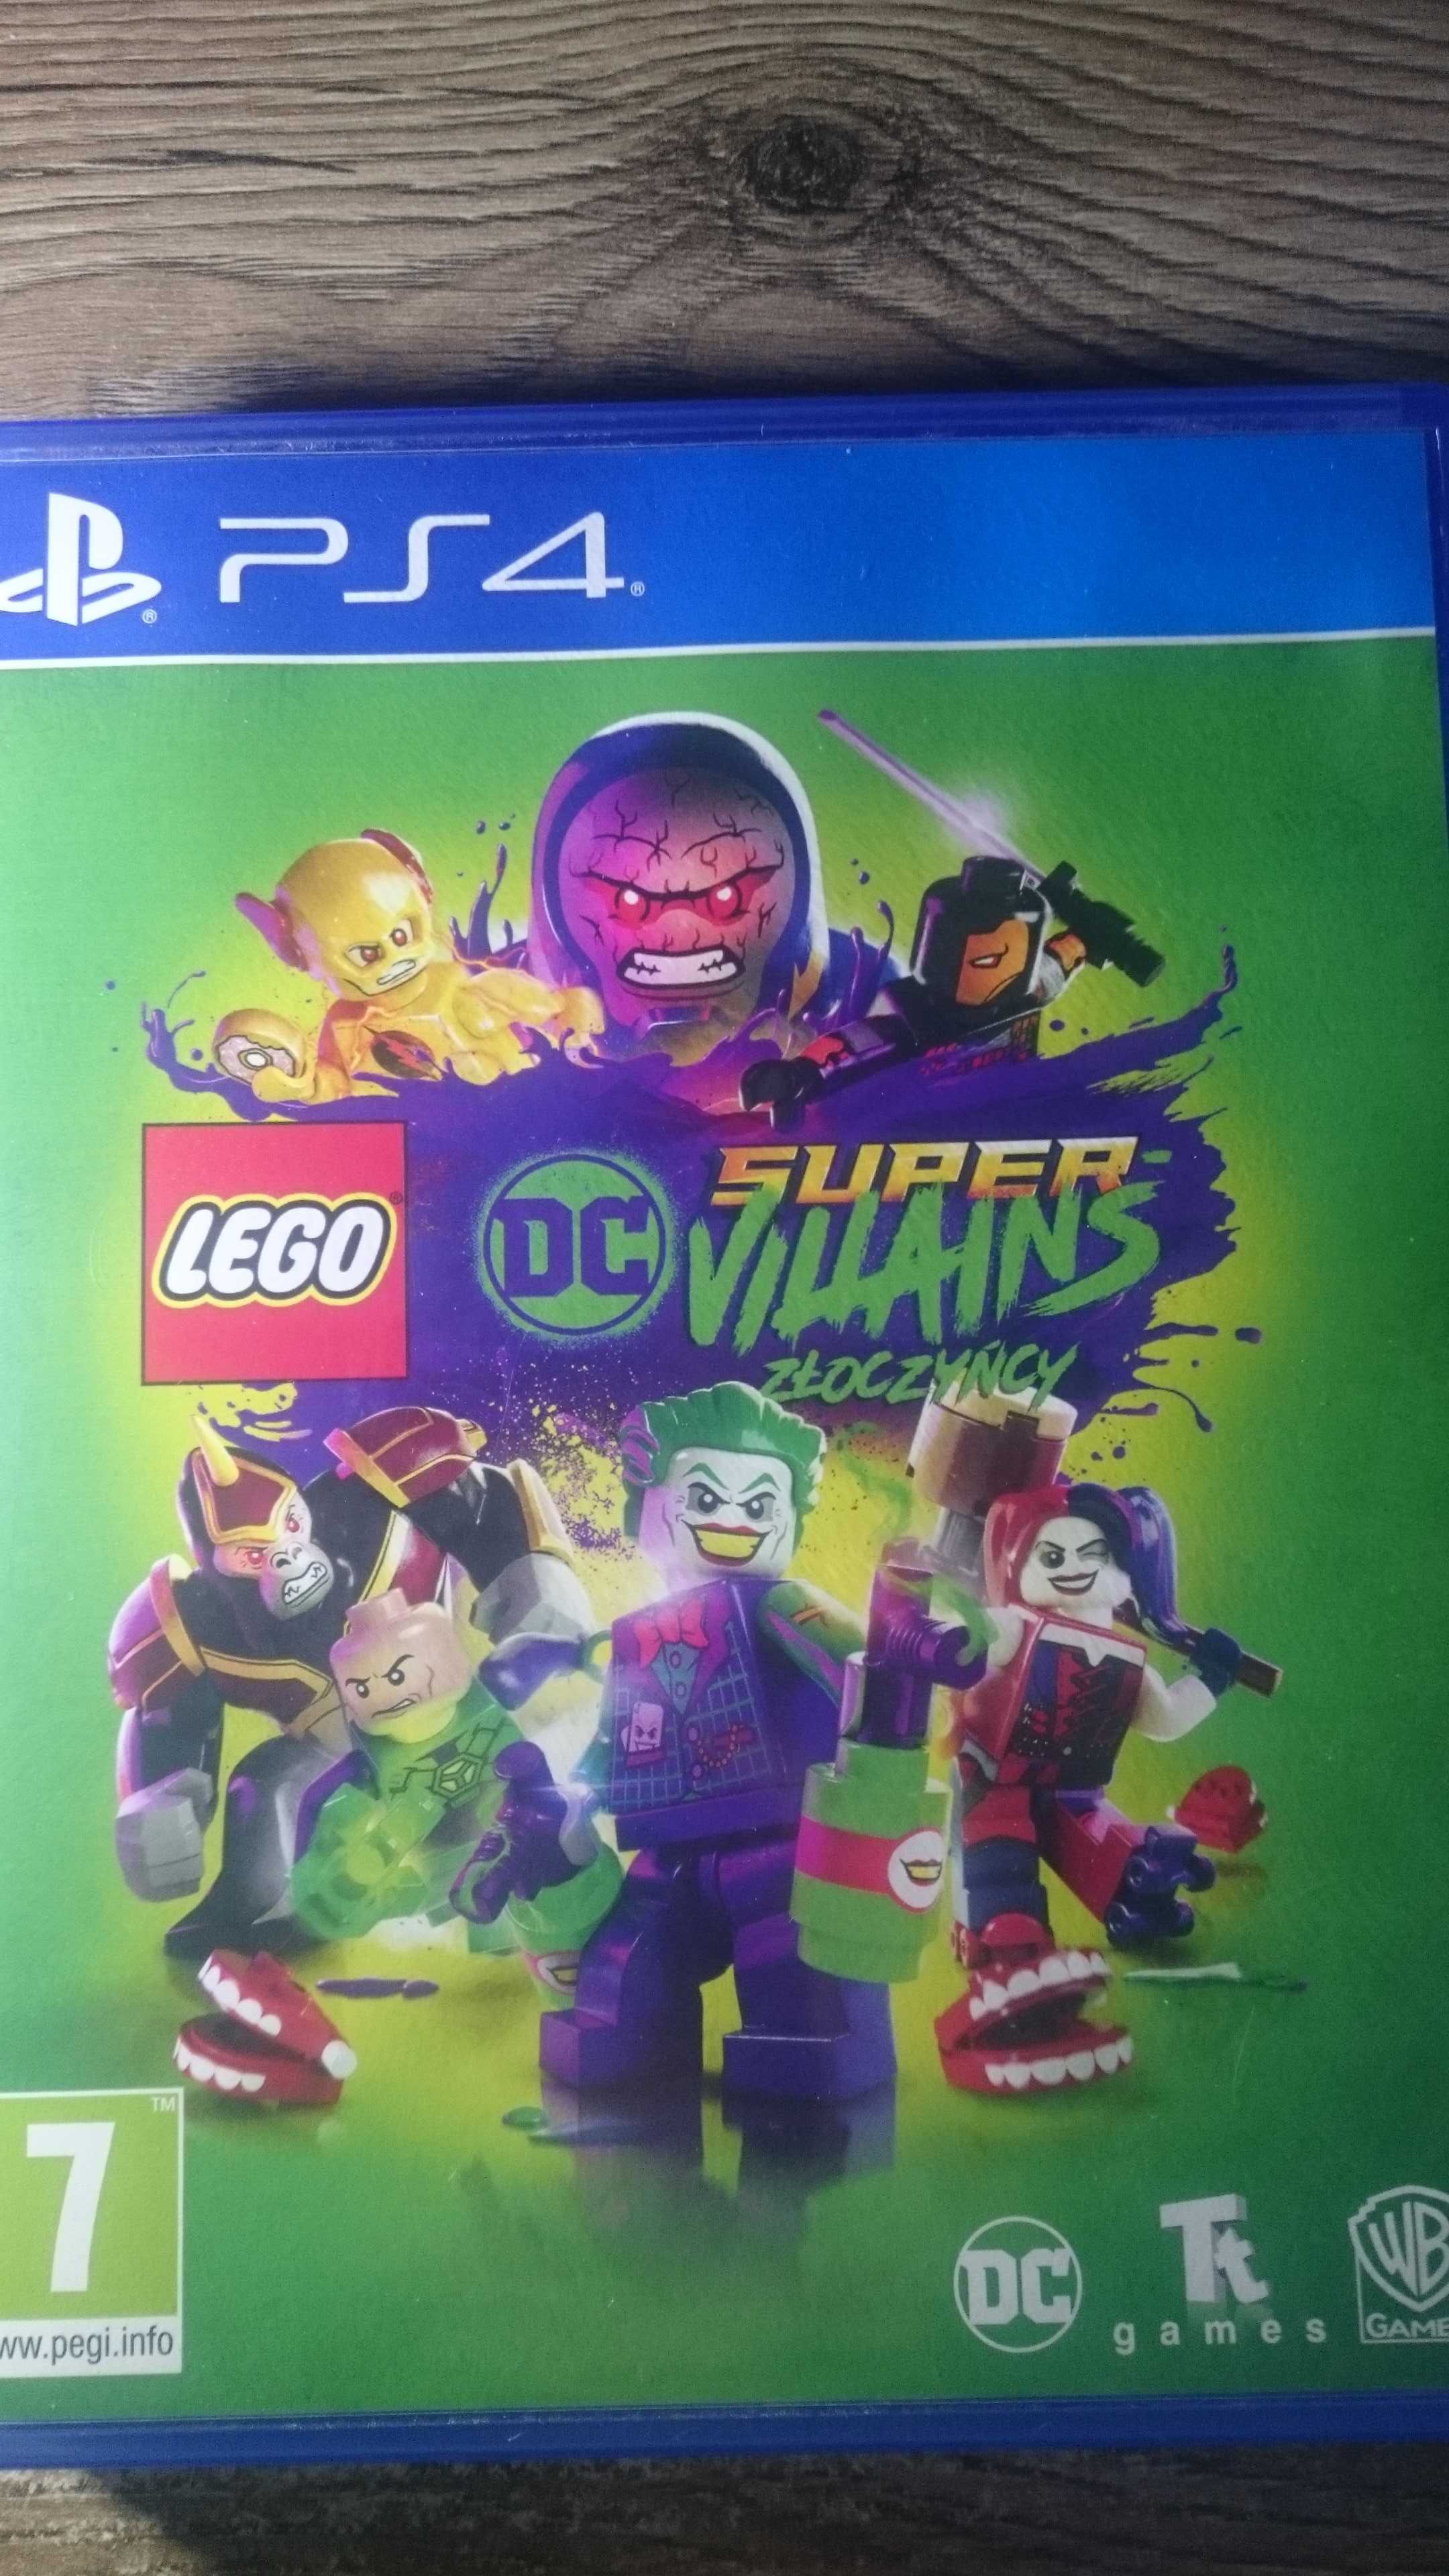 LEGO DC Super Villains Złoczyńcy PS4 minecraft Playstation 4 Rayman